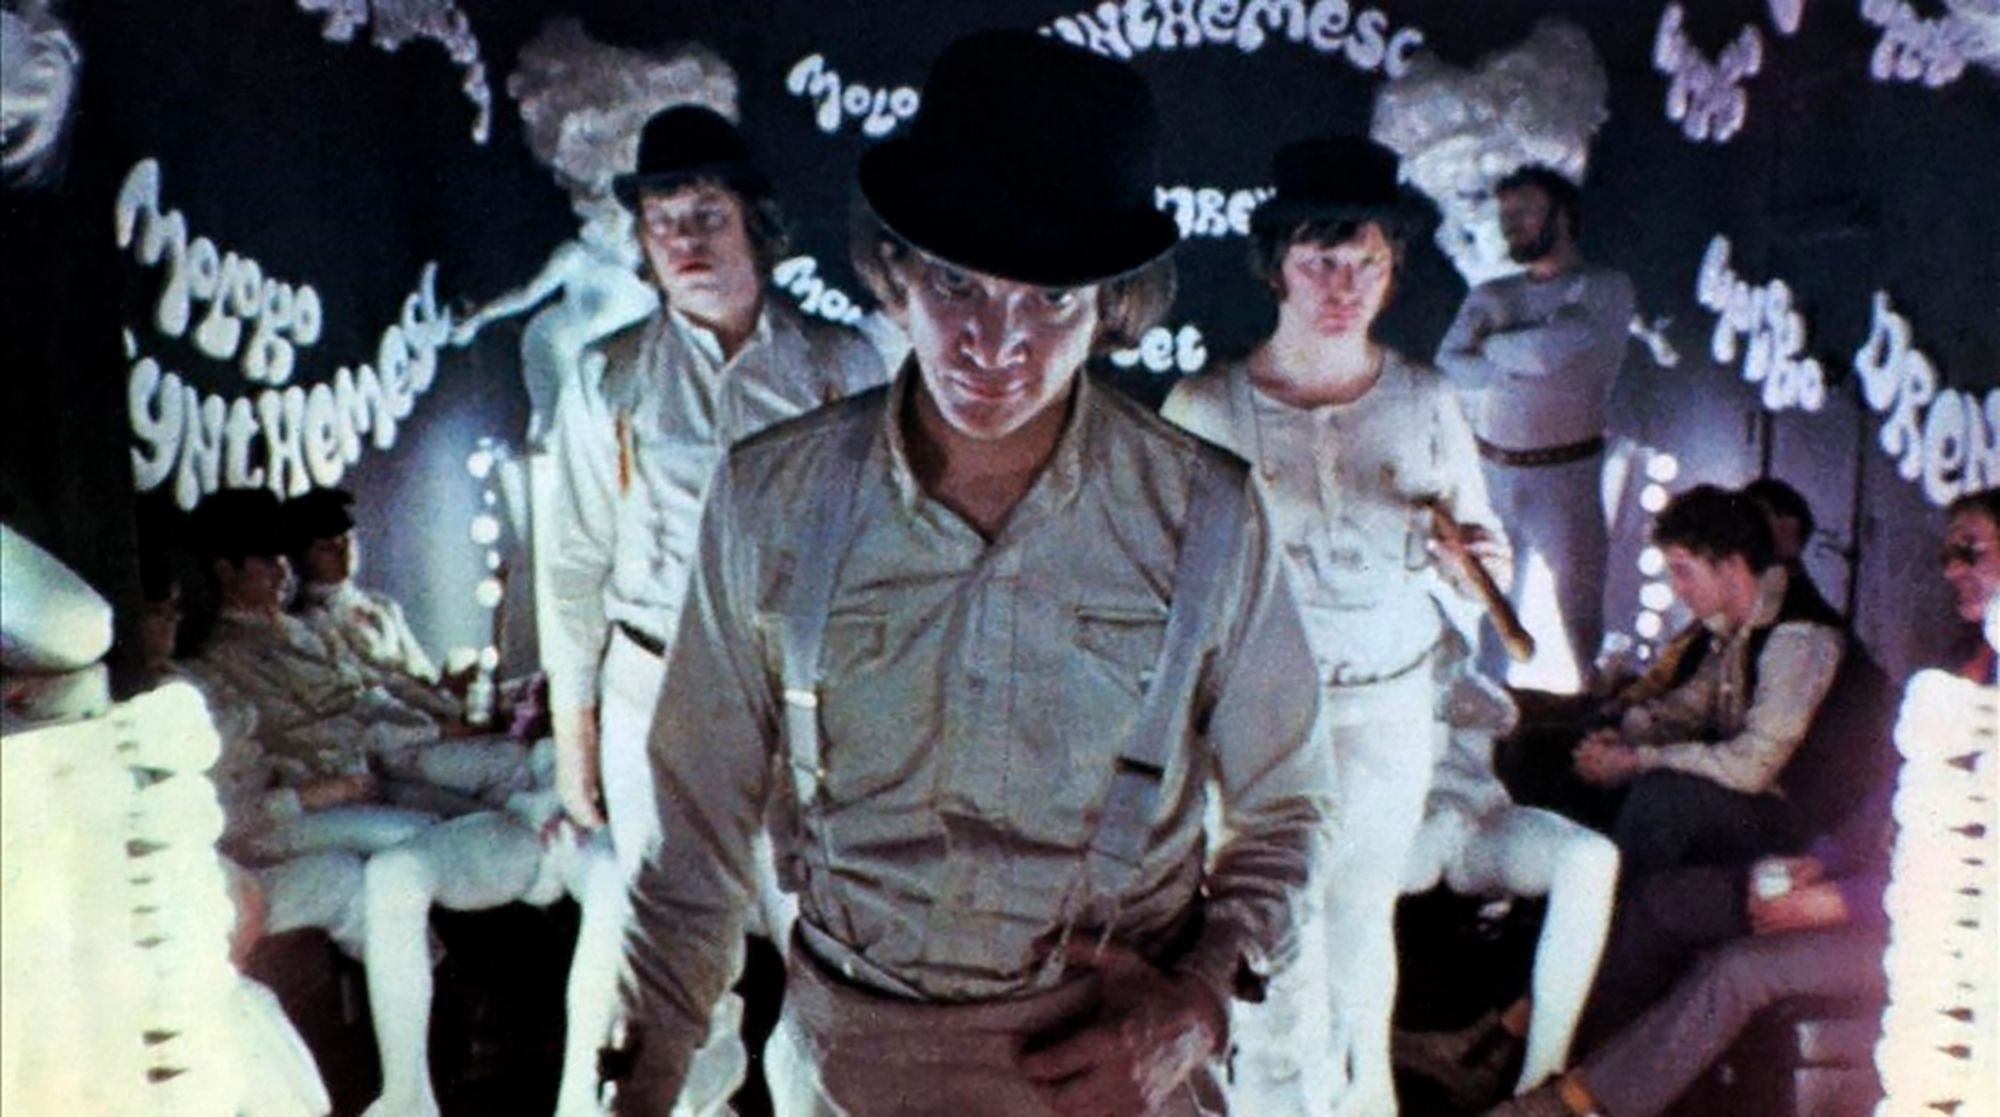 Cine en confinamiento: las películas imprescindibles de Stanley Kubrick